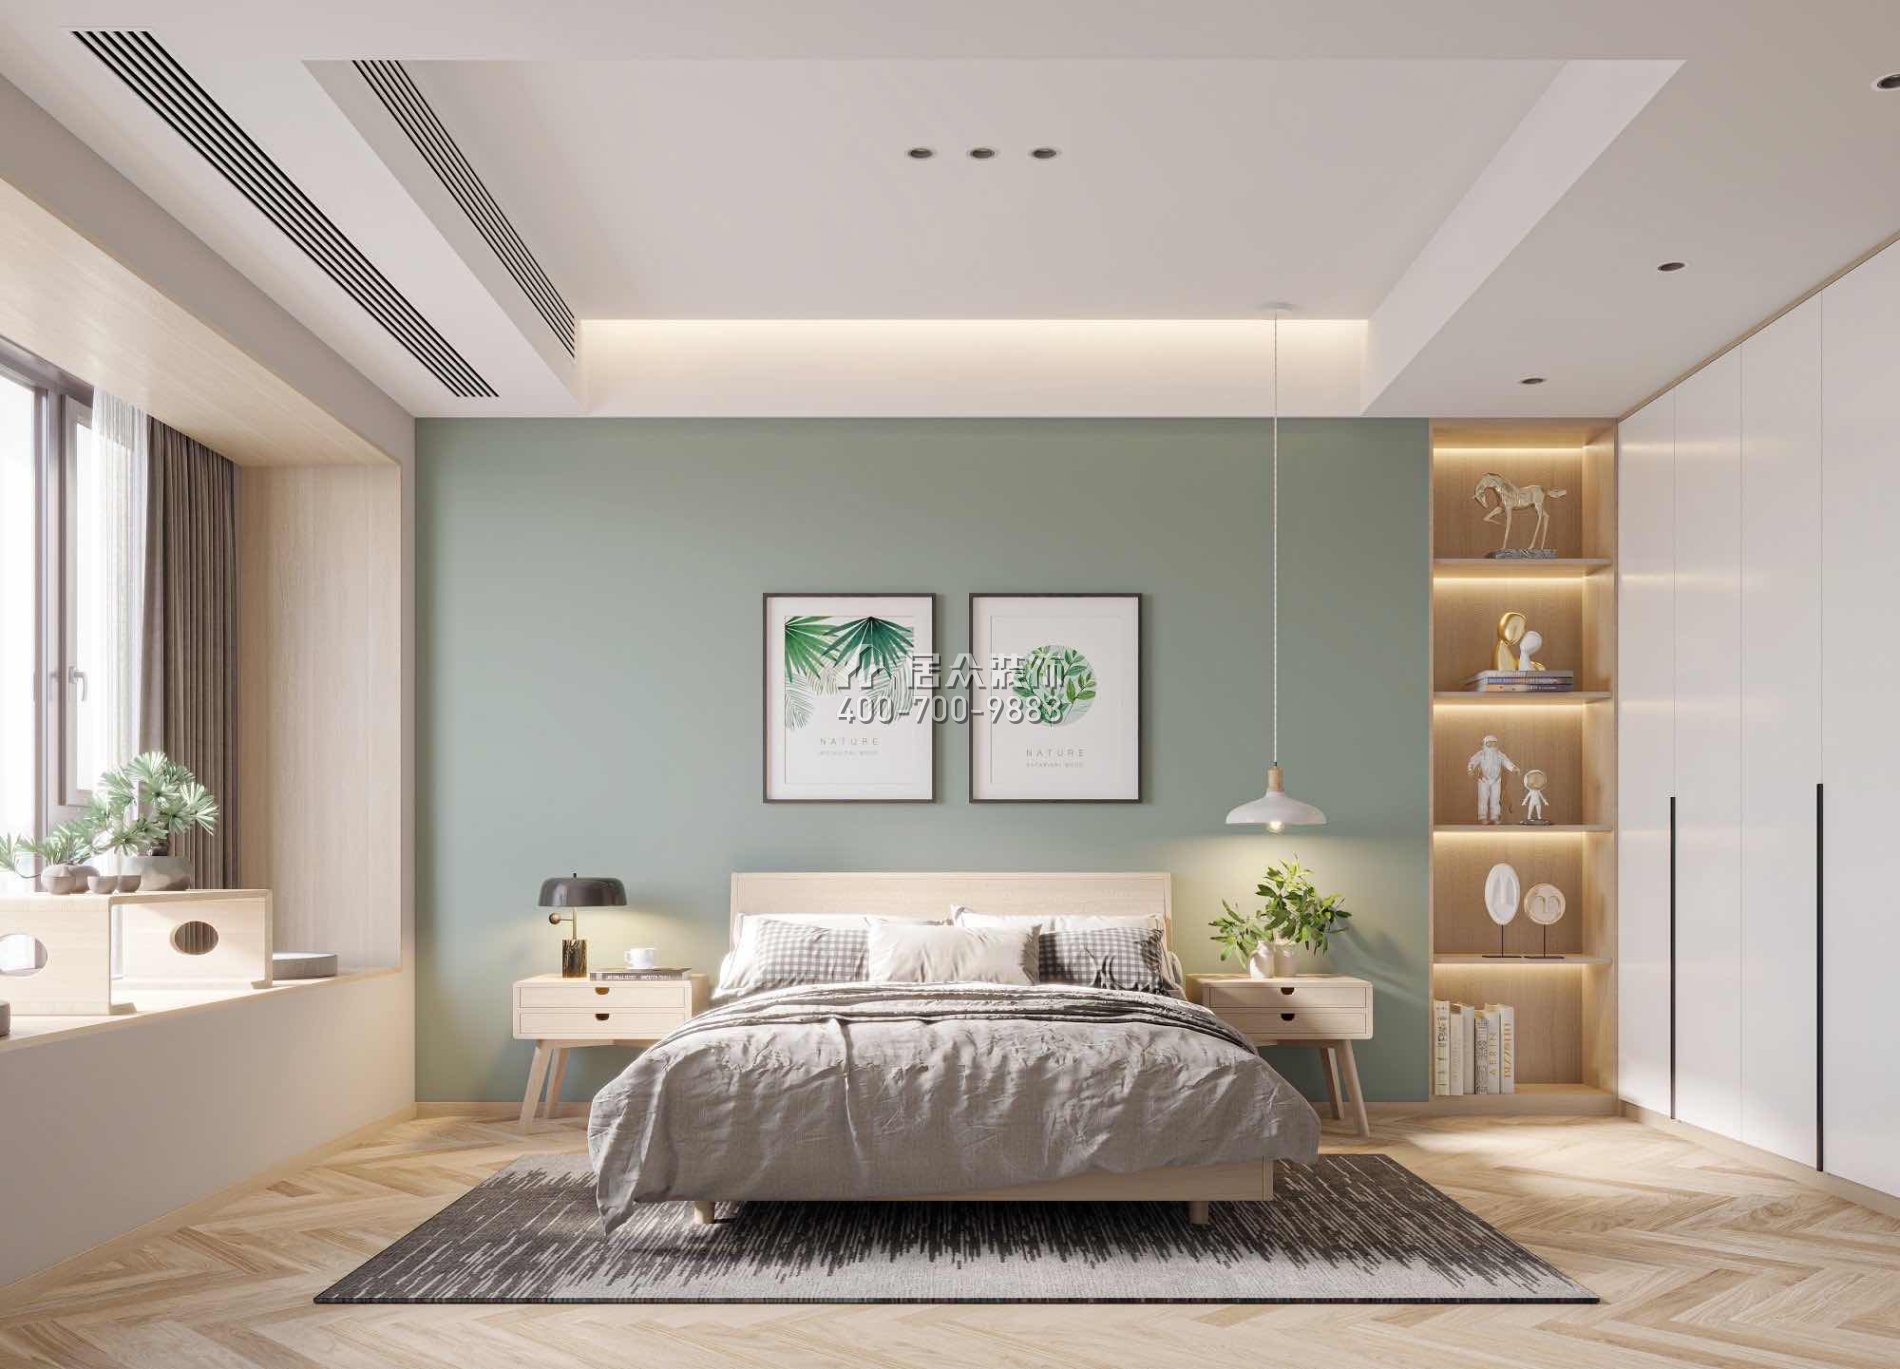 恒裕水墨兰亭350平方米其他风格复式户型卧室kok电竞平台效果图